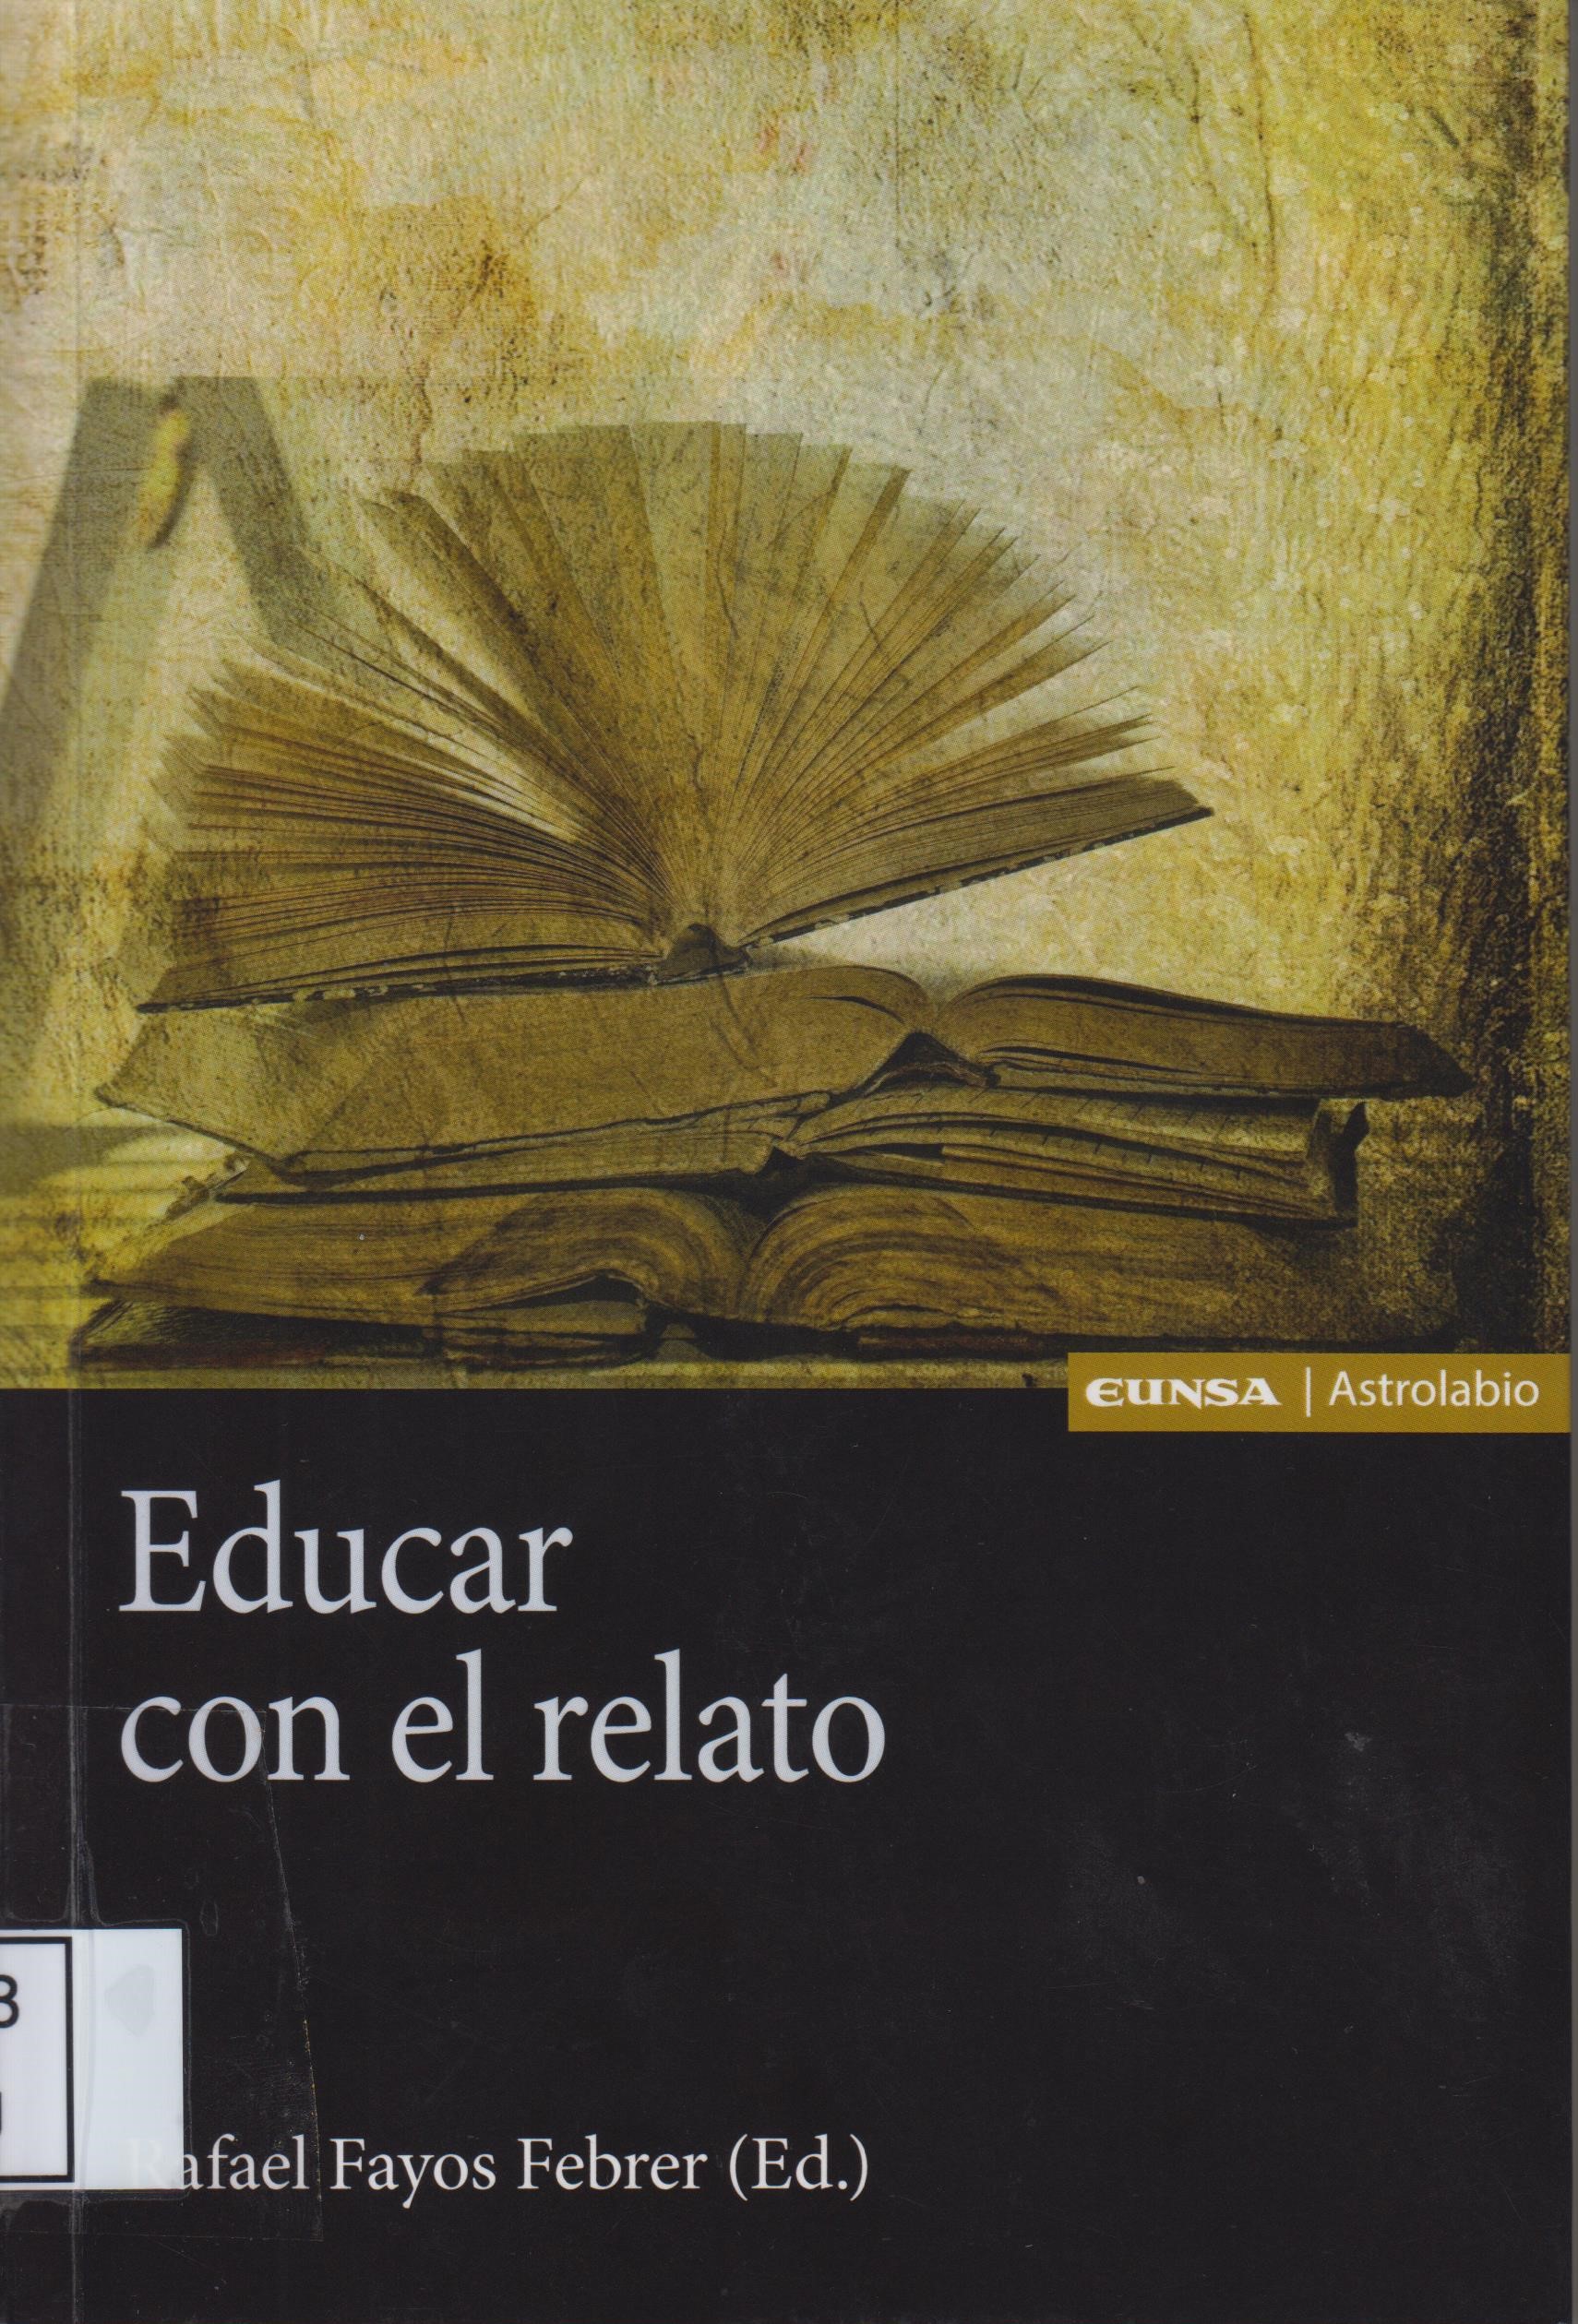 Imagen de portada del libro Educar con el relato